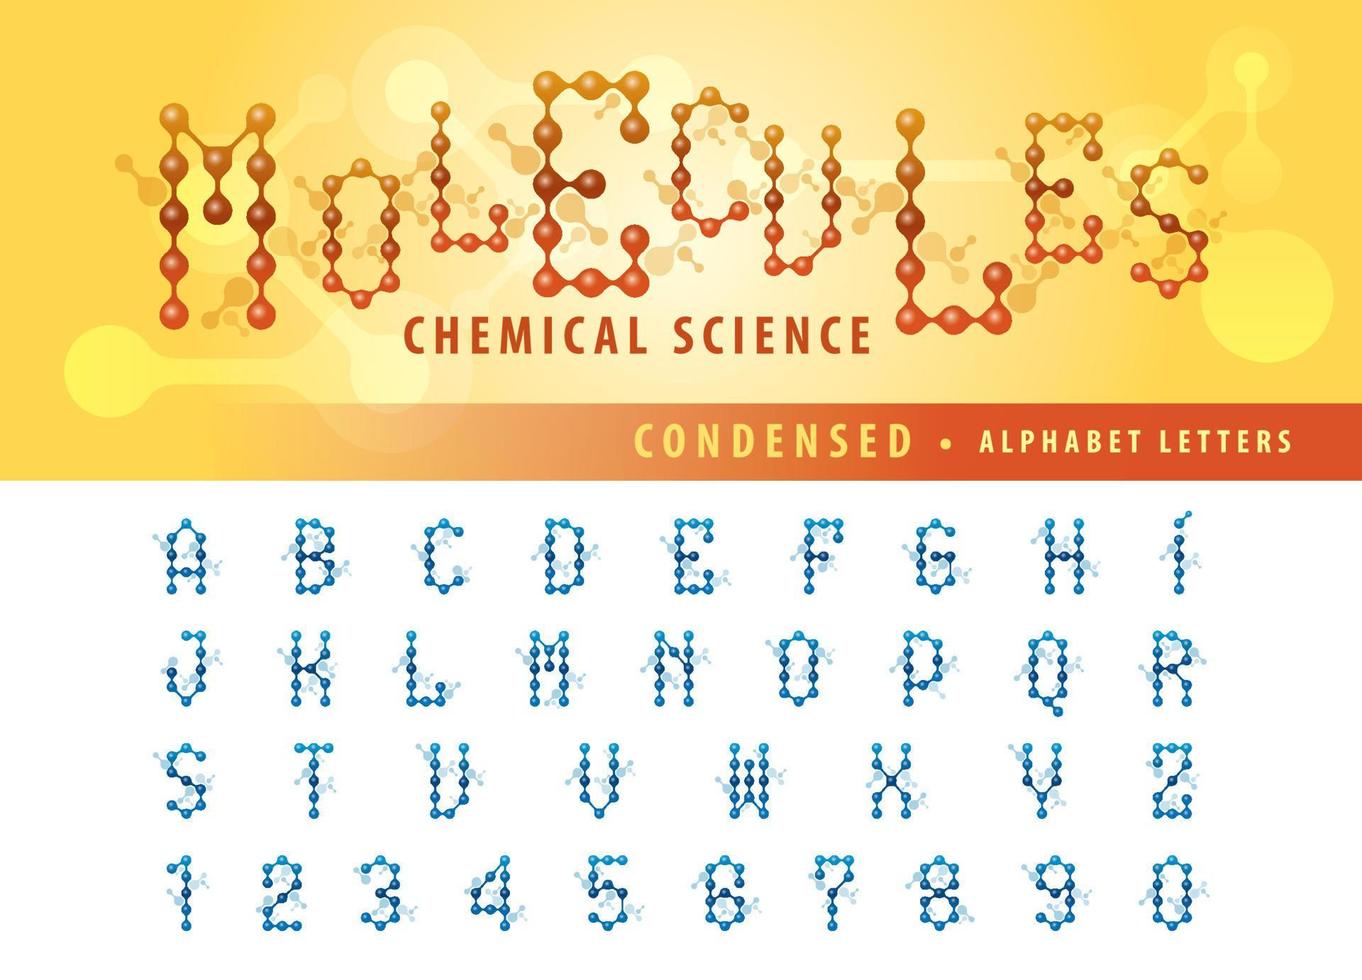 dna molekyl cell alfabetet bokstäver och siffror, kondenserade bokstäver uppsättning för atom molekyl cell kemi, vetenskap, anslut, anslutning, biologi, fysik vektor